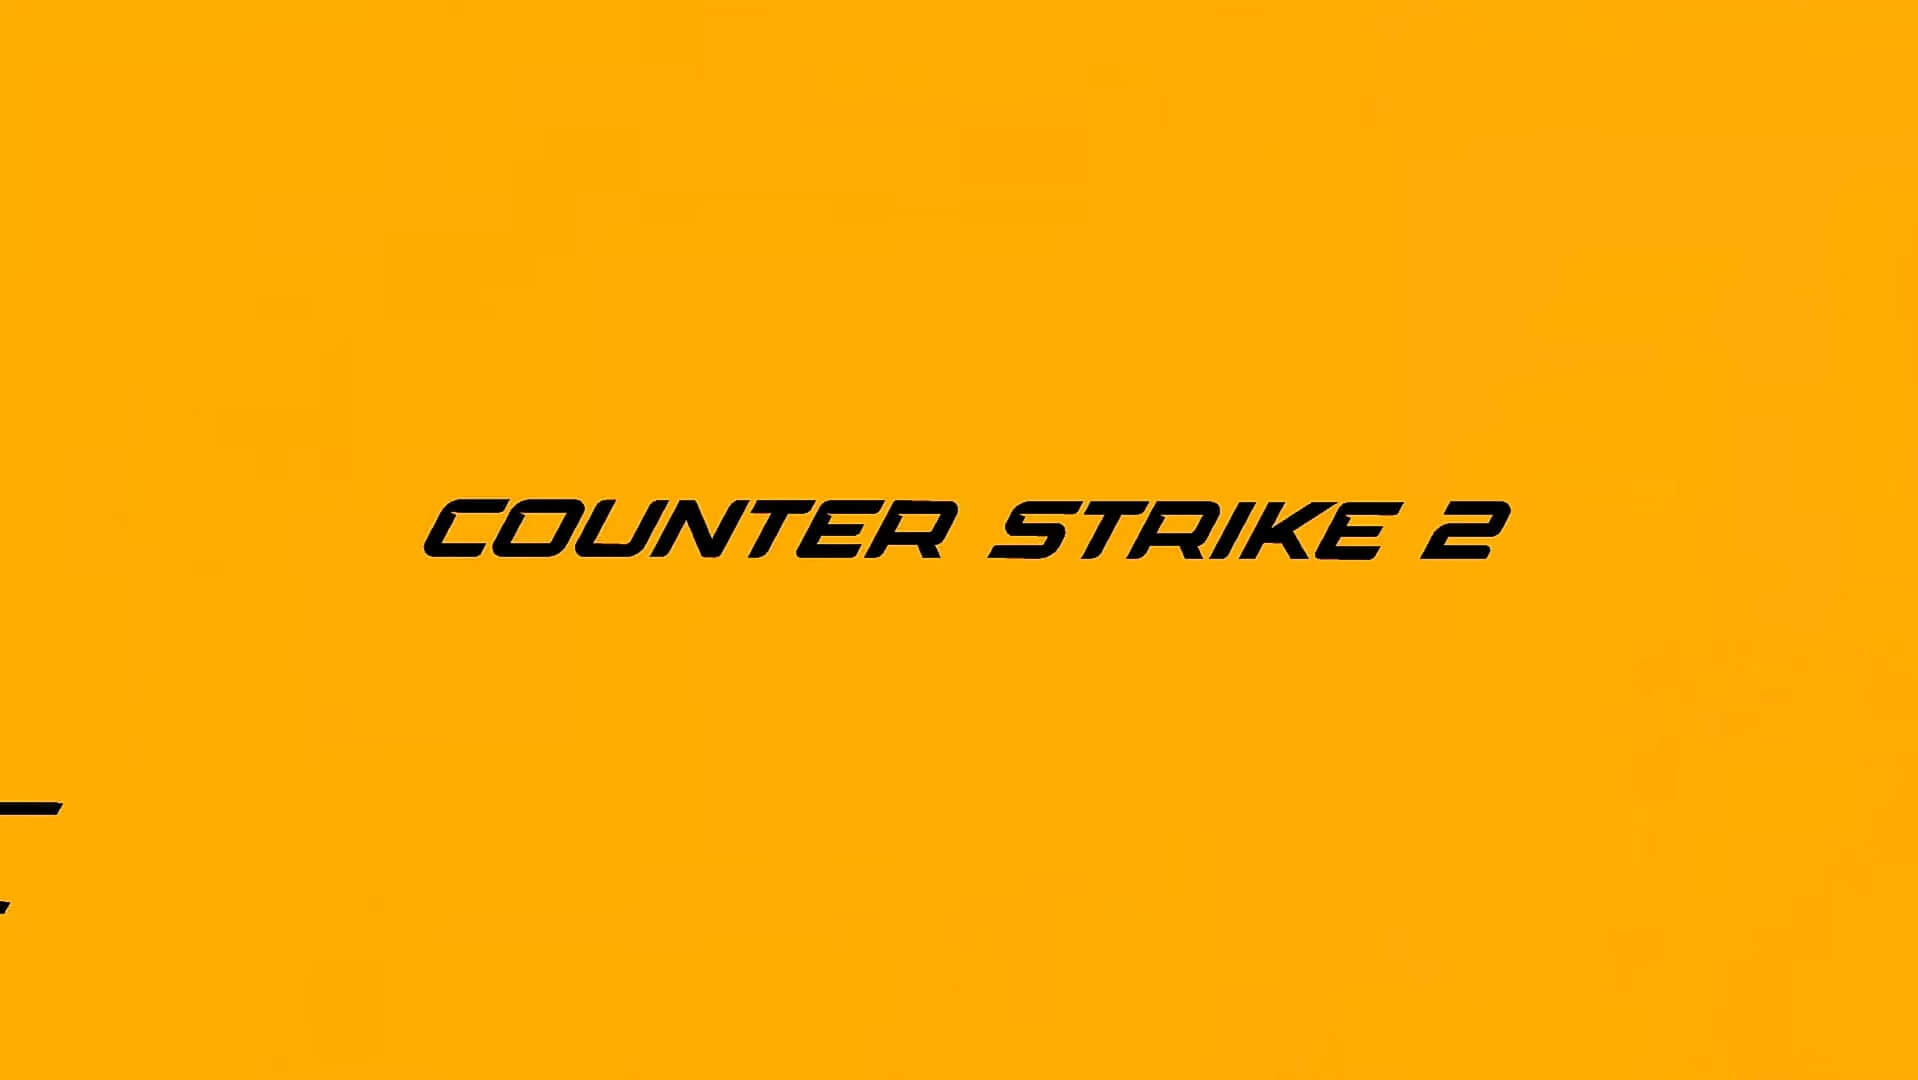 Counter Strike 2 resmi olarak duyuruldu! İşte çıkış tarihi ve ilk detaylar